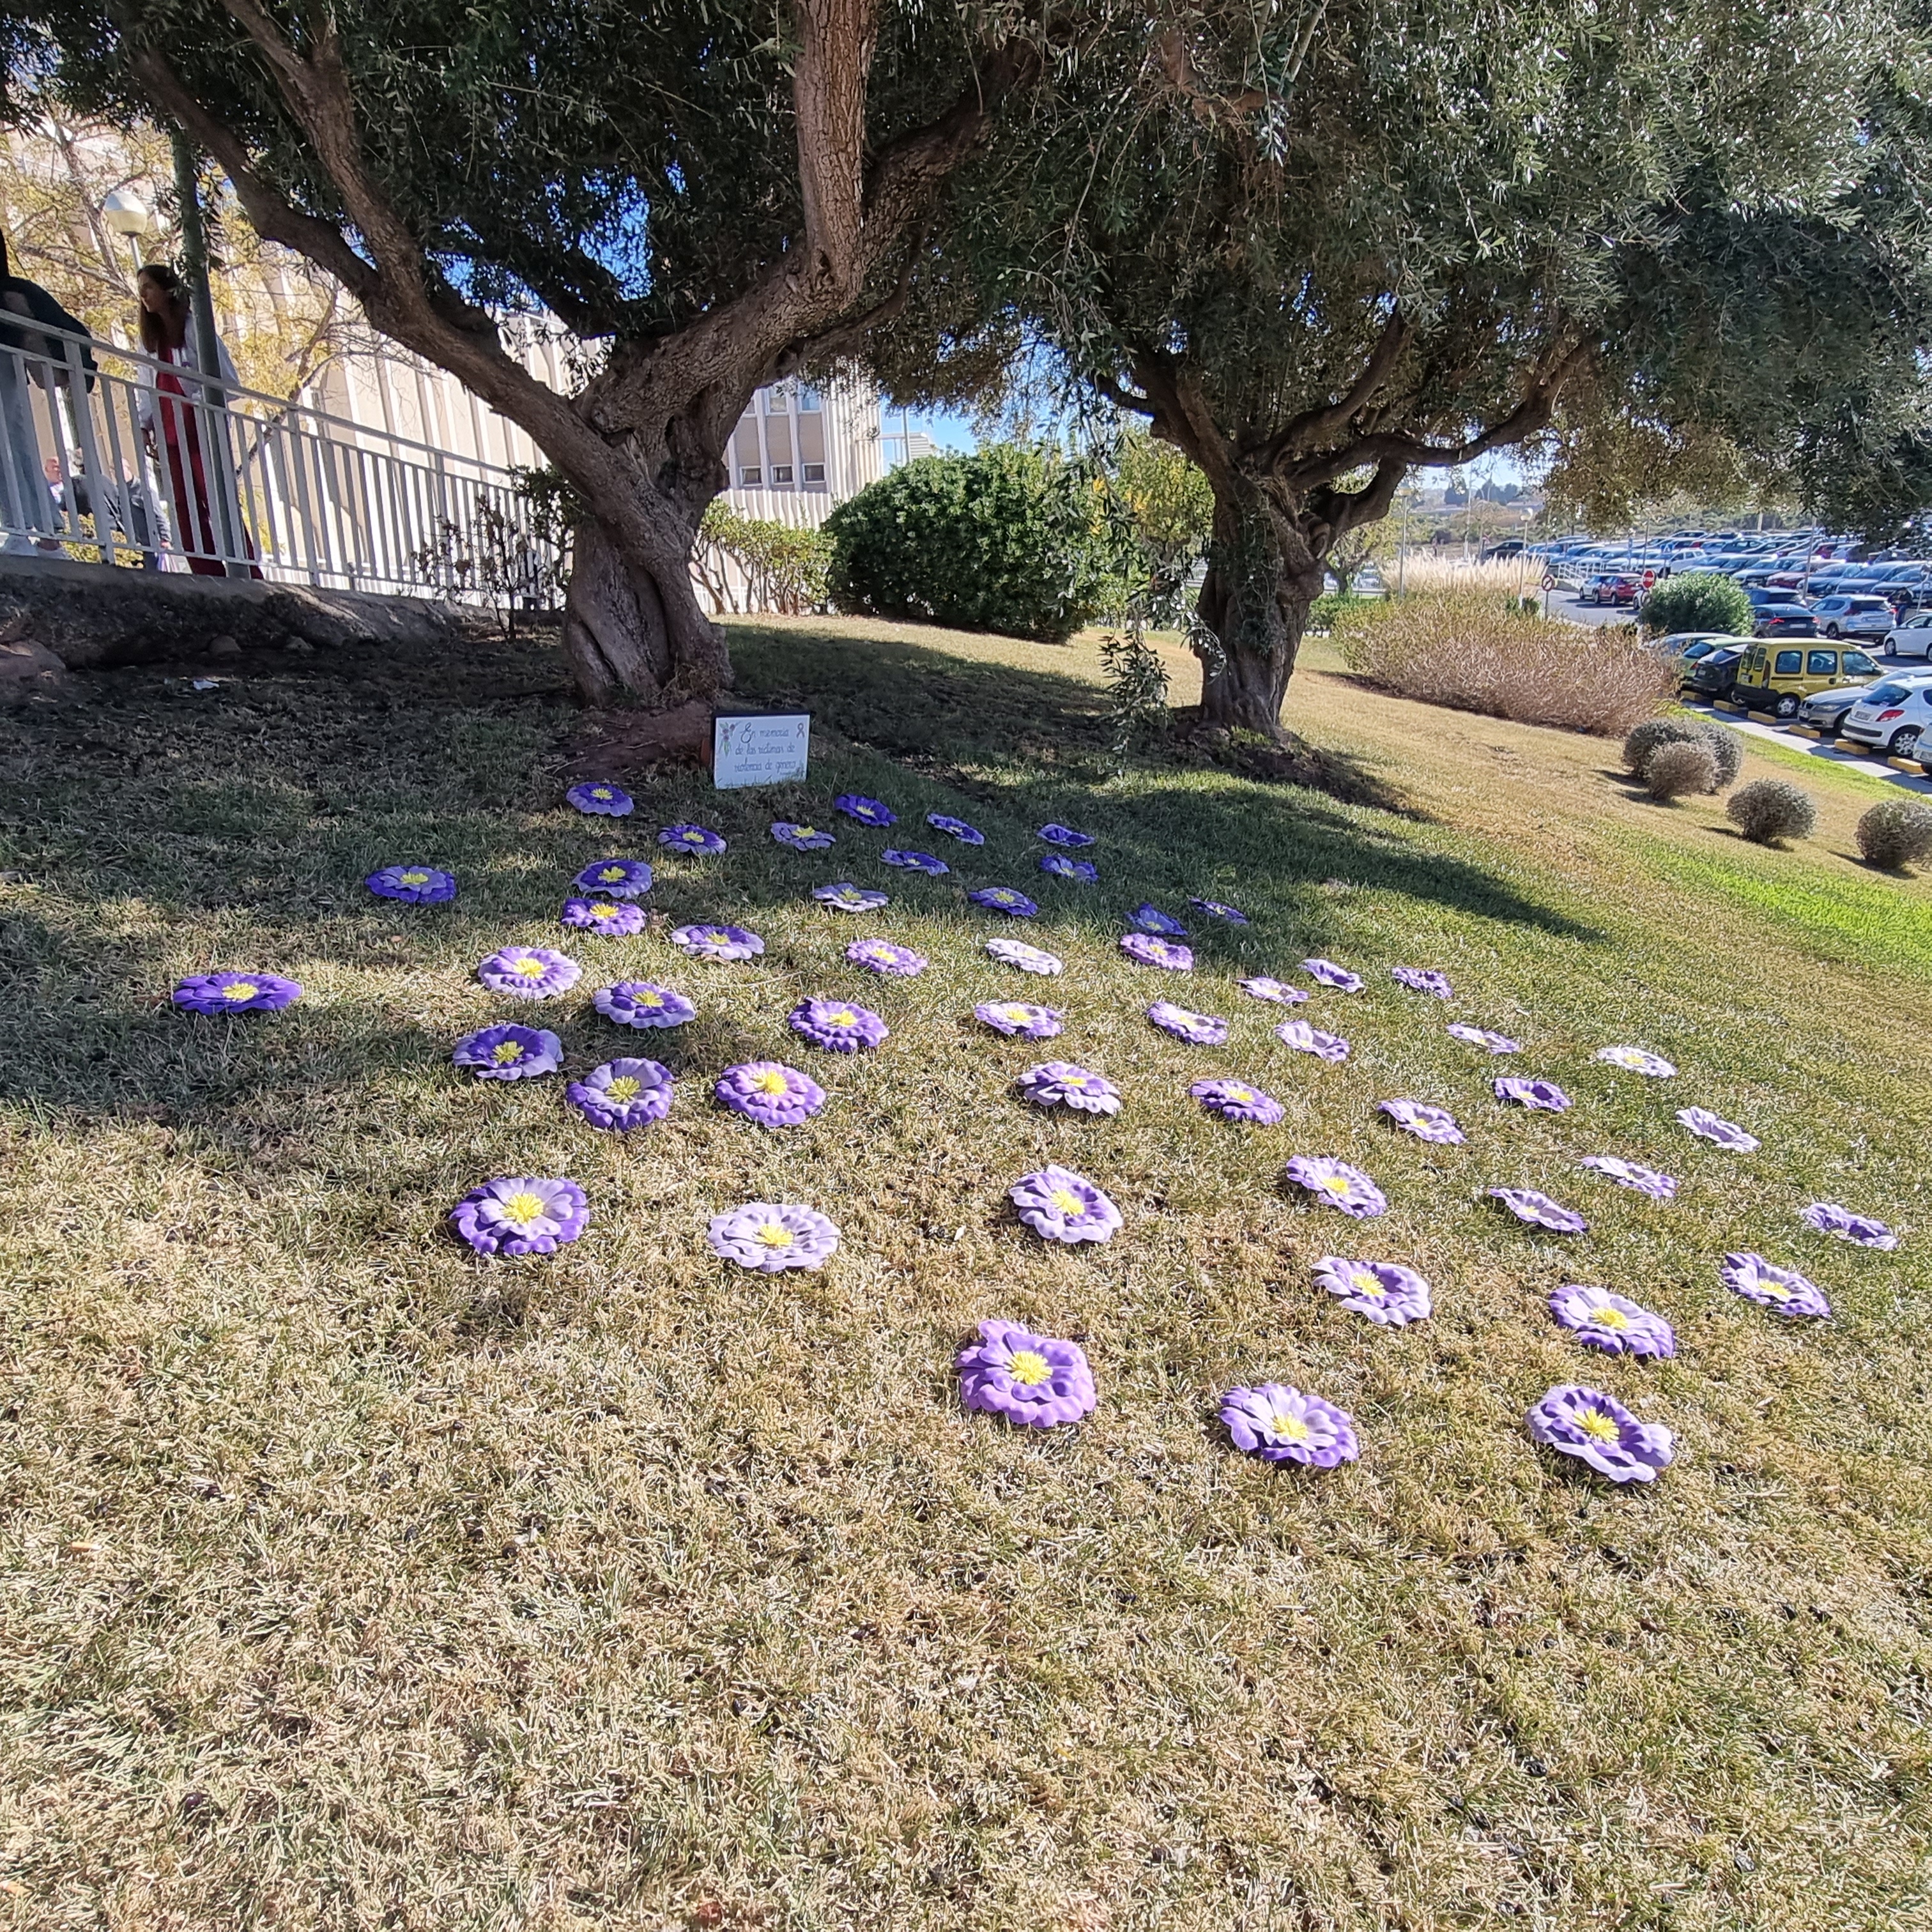 Flors morades clavades en el sòl sota l'arbre amb el cartell commemoratiu per les dones mortes per violència de gènere